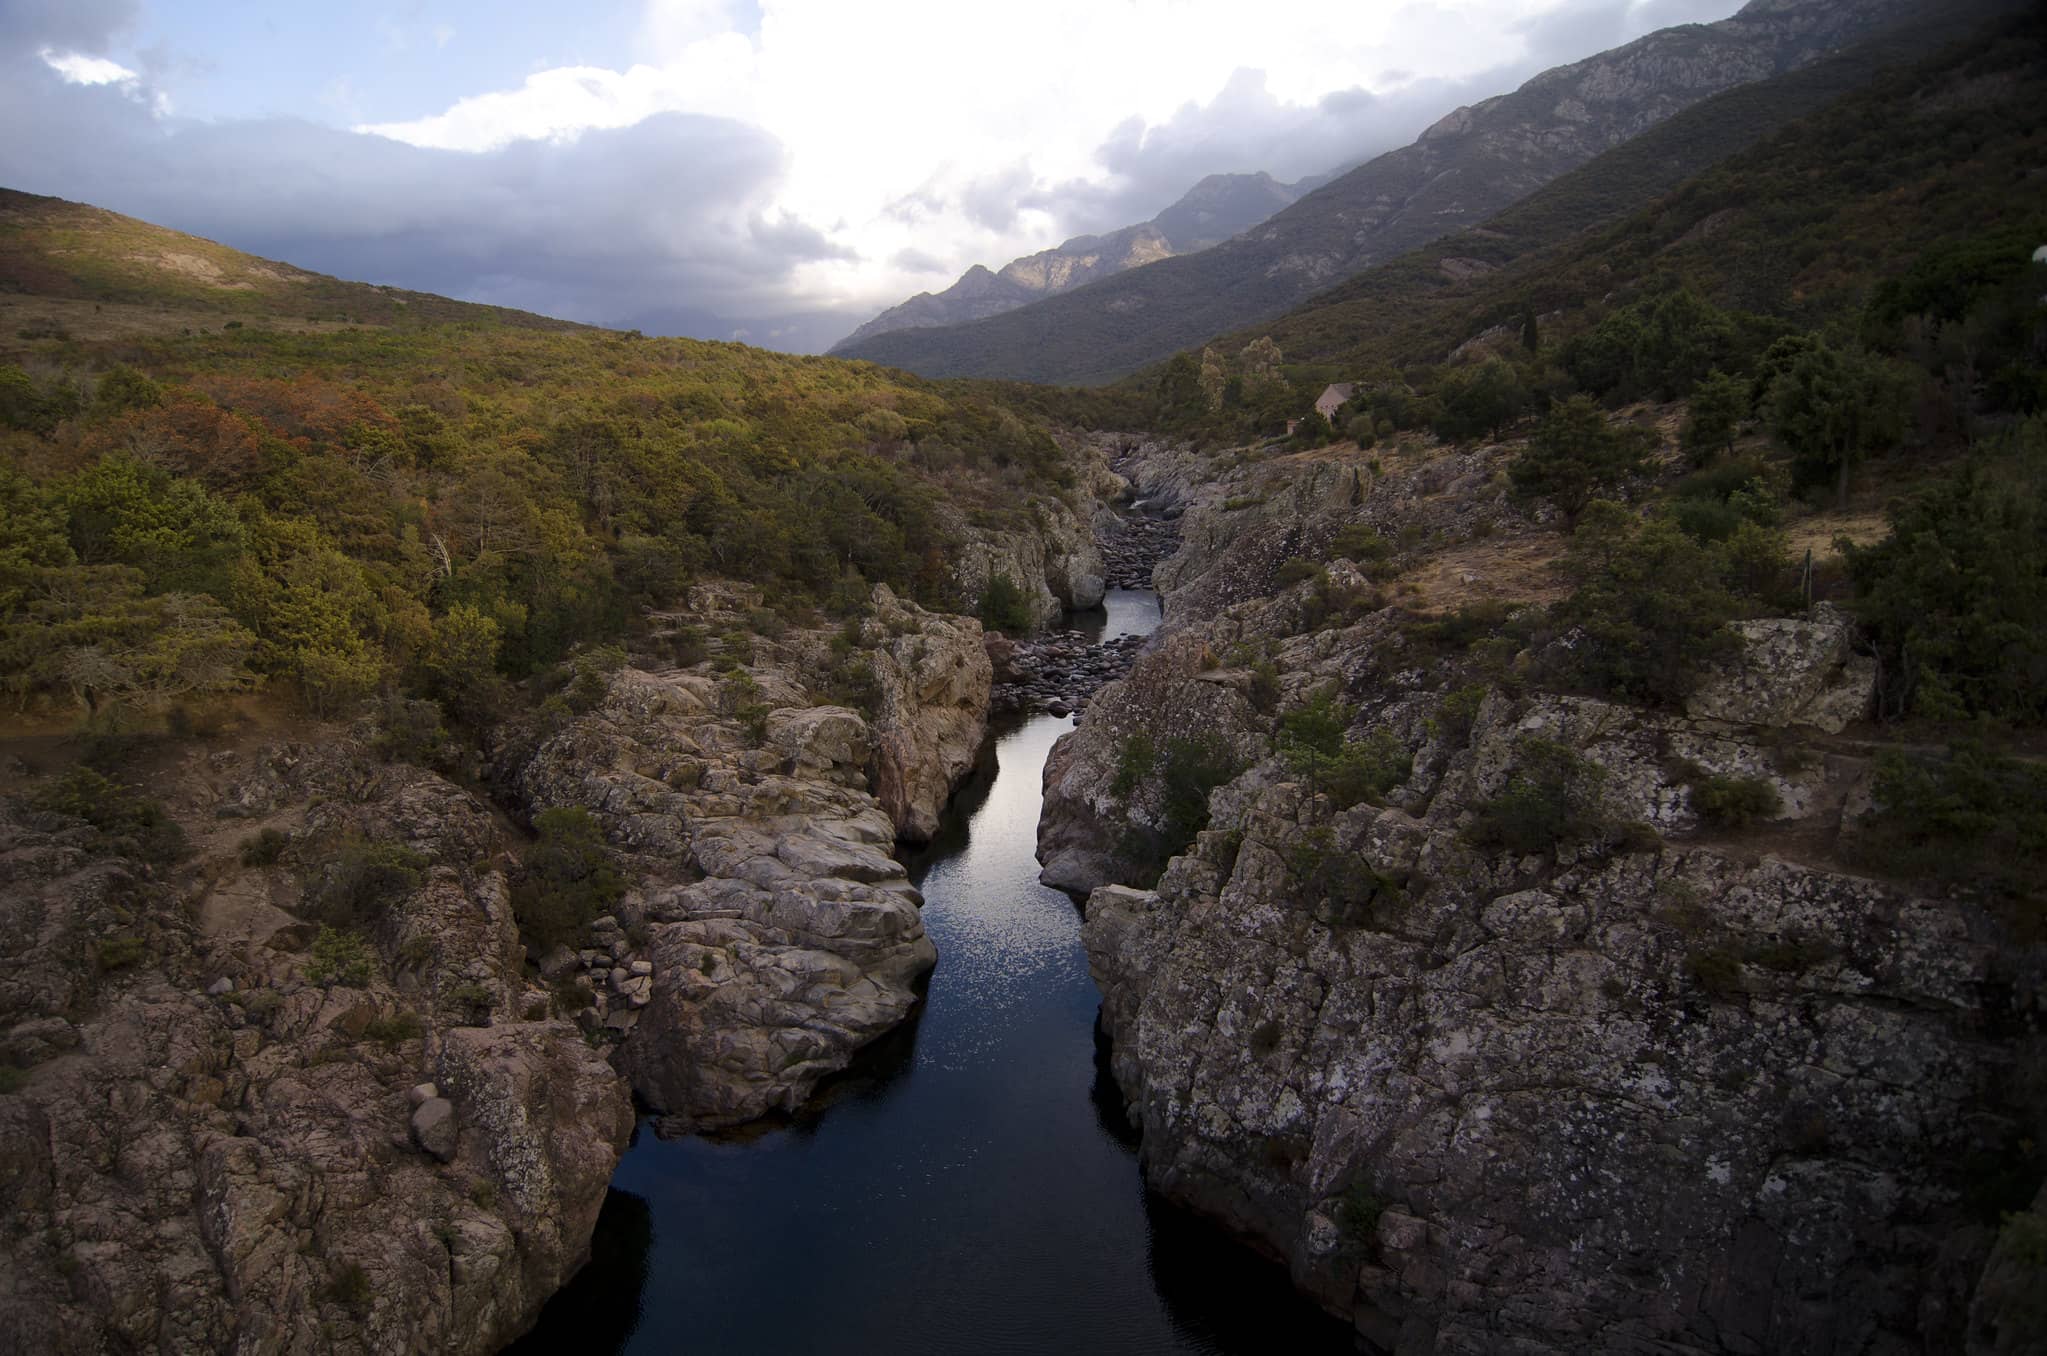 Vue panoramique de la vallée du Fango. Présence de blocs de roches encadrant le fleuve, végétation, montagnes au loin. 